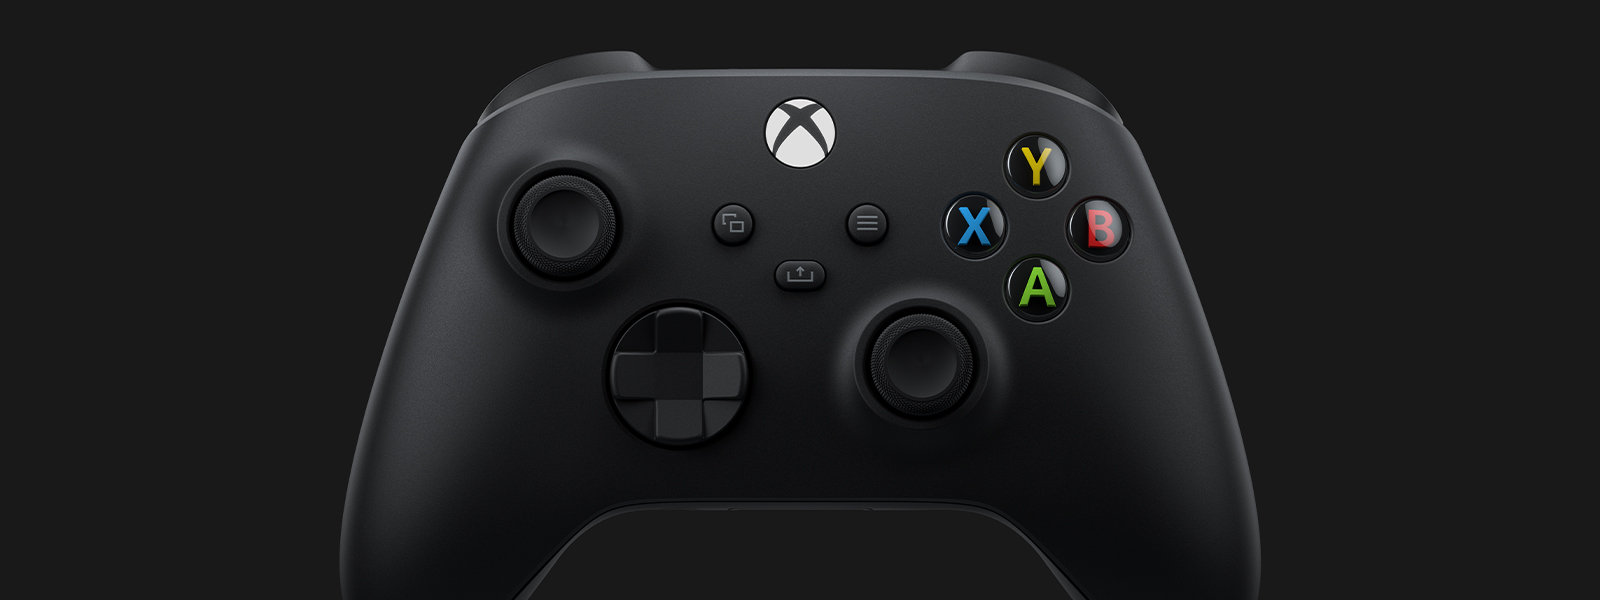 Widok kontrolera bezprzewodowego dla konsoli Xbox